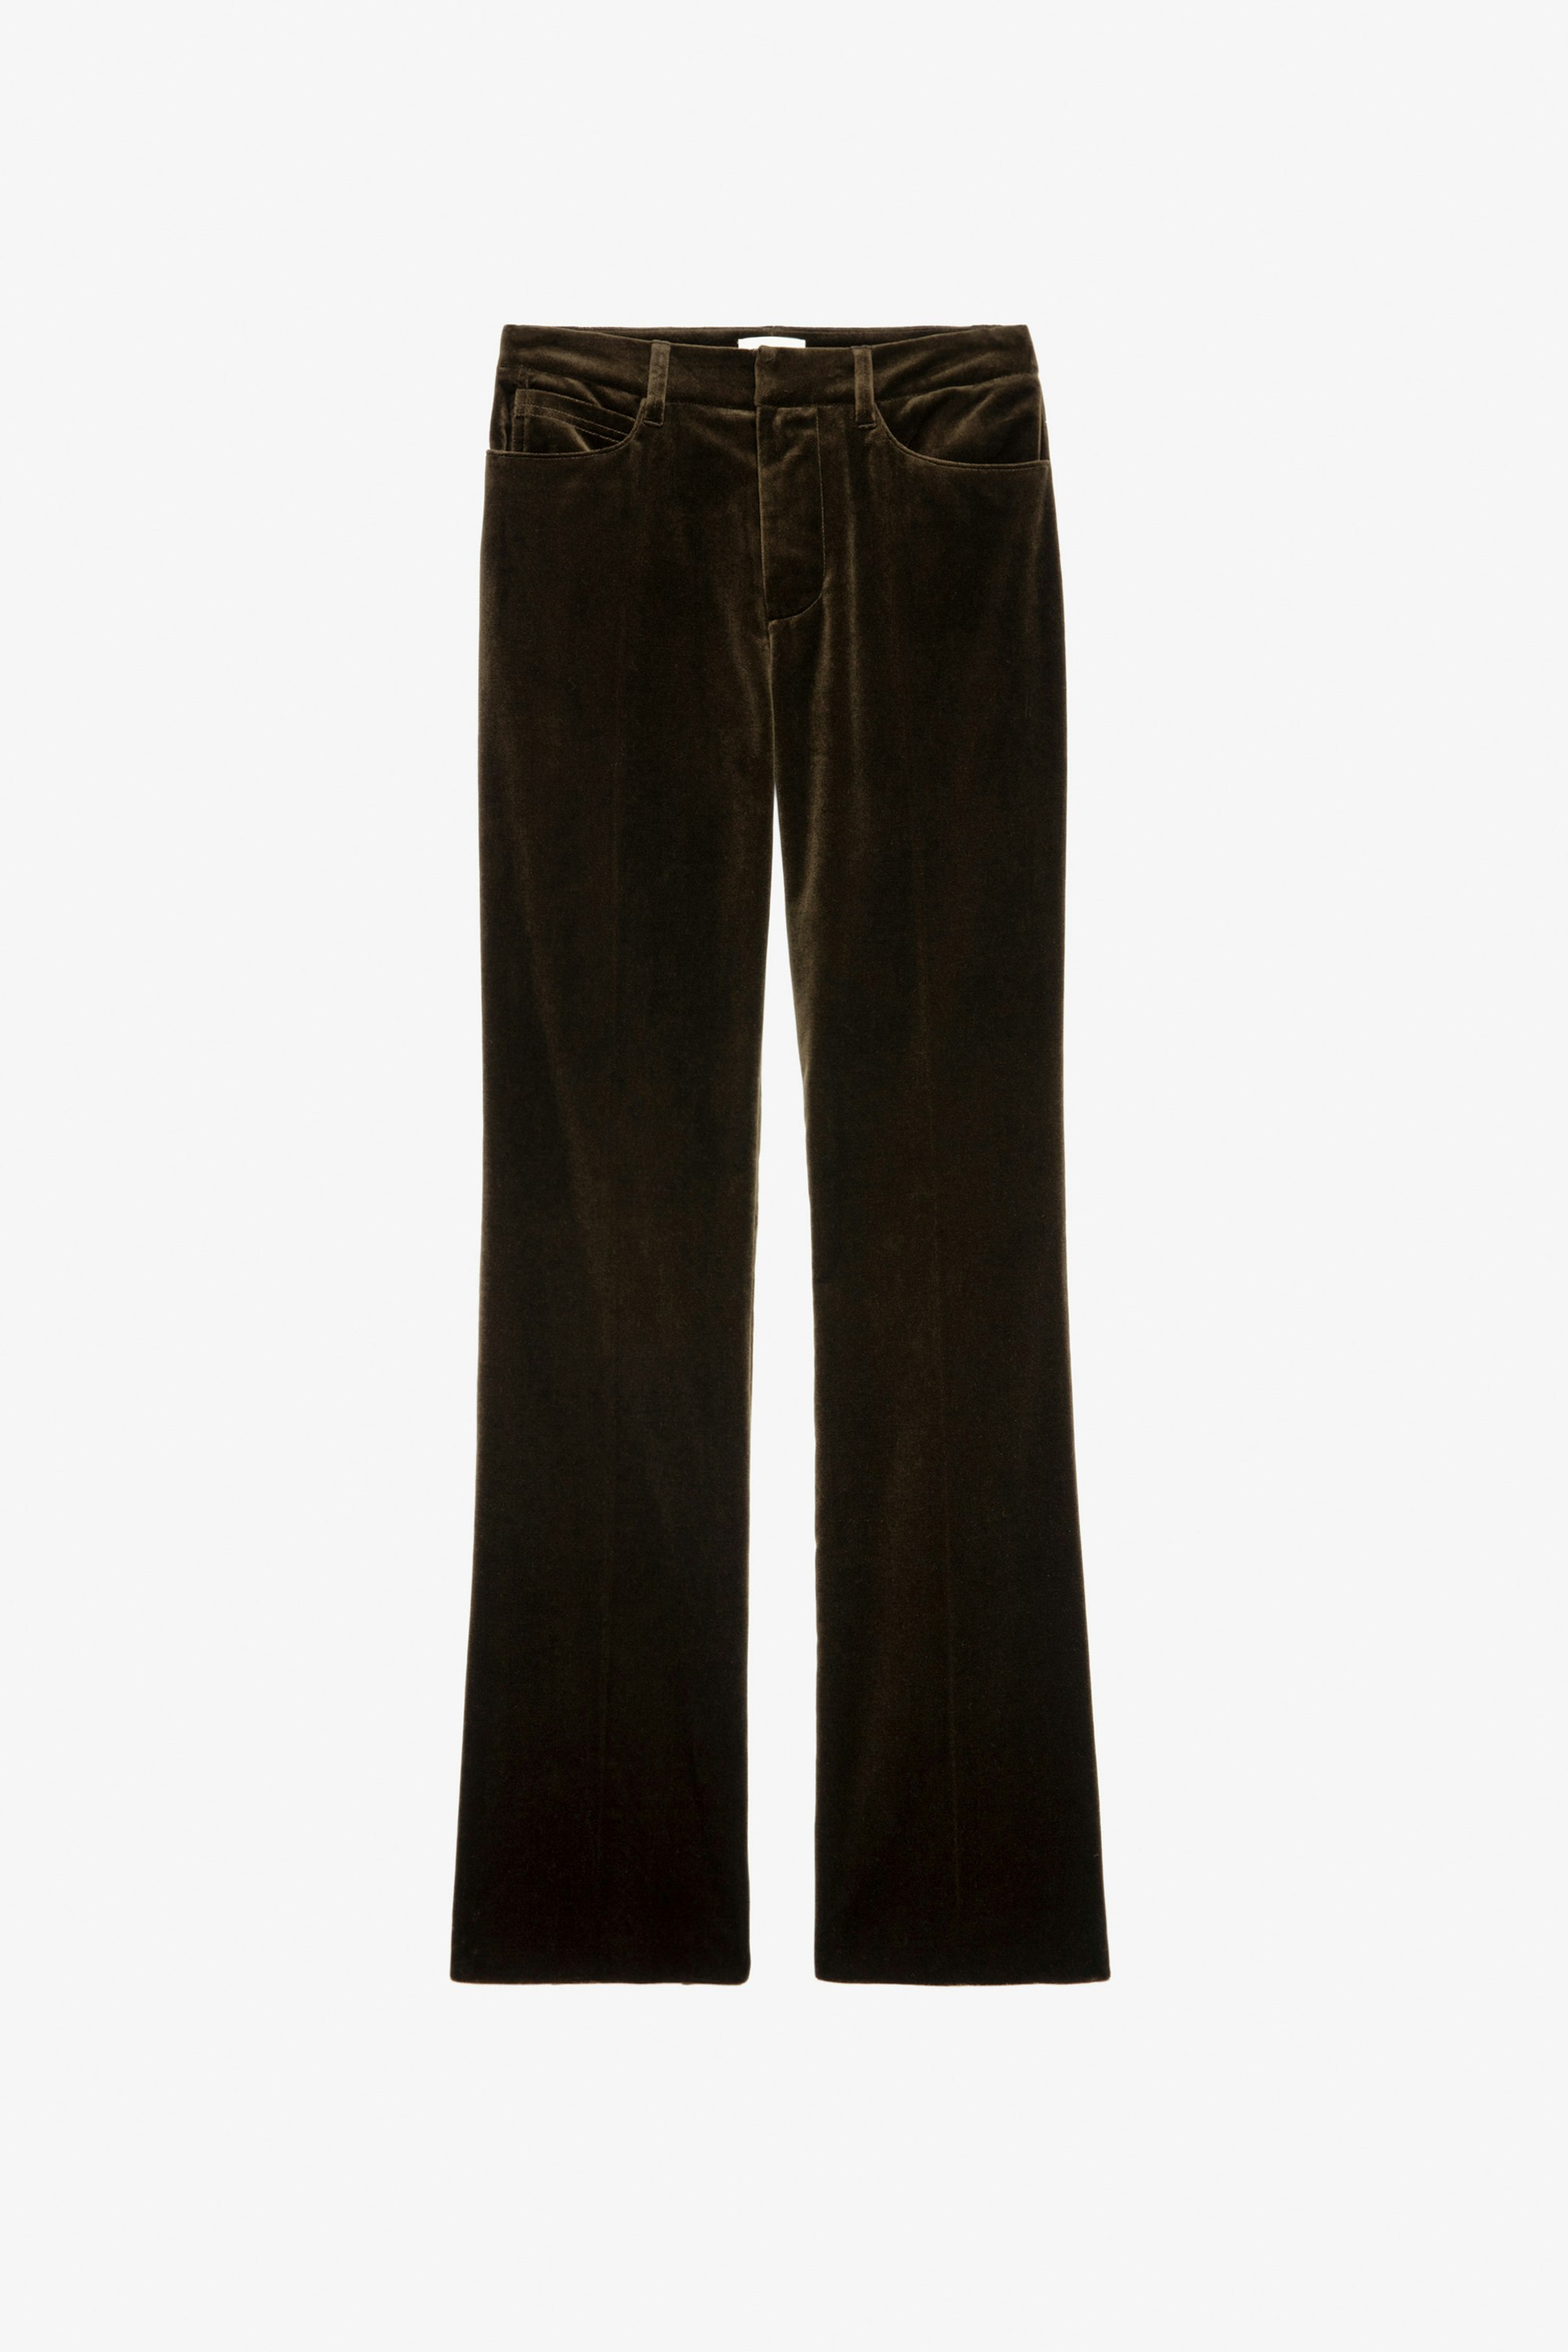 Pantalón de terciopelo Pistol - Pantalón de traje de terciopelo en color caqui para mujer.